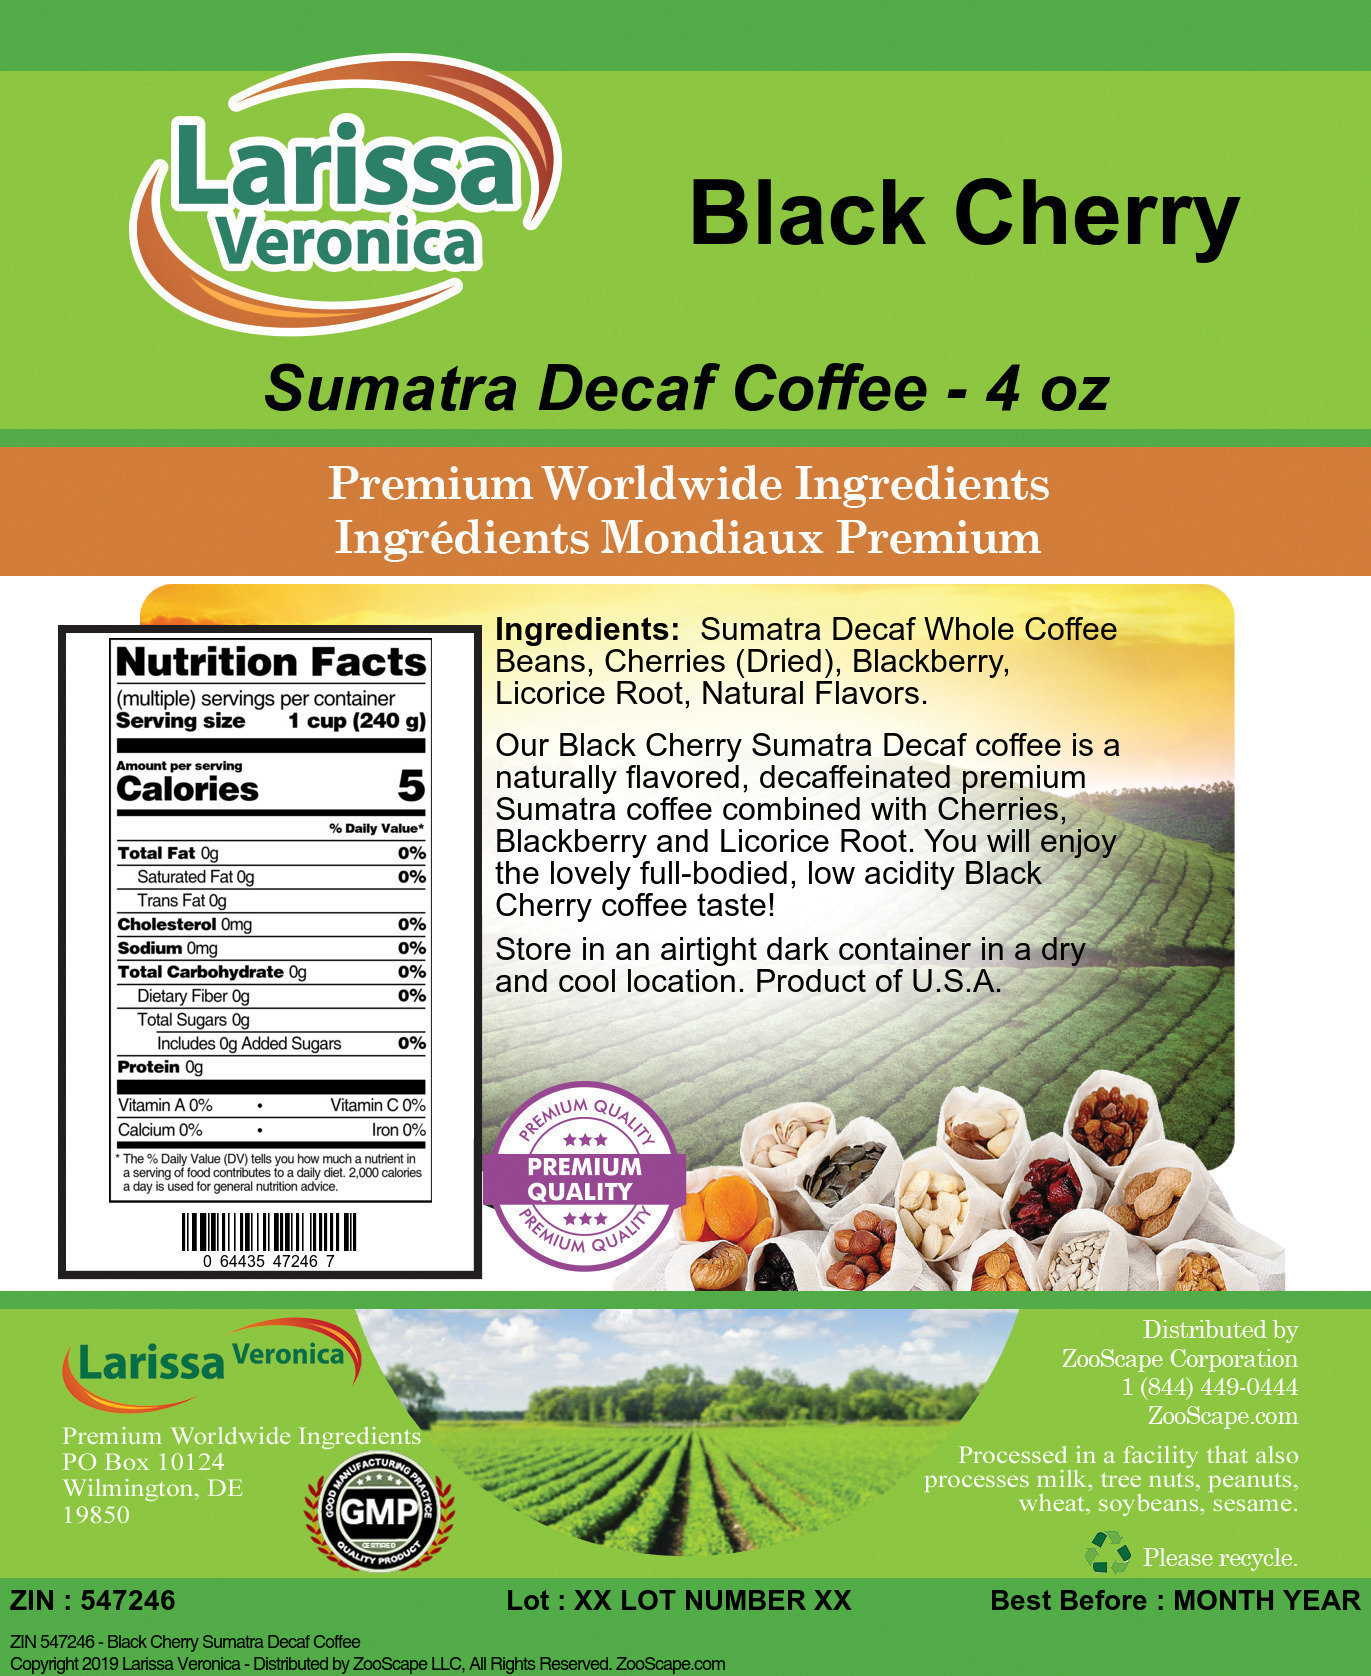 Black Cherry Sumatra Decaf Coffee - Label